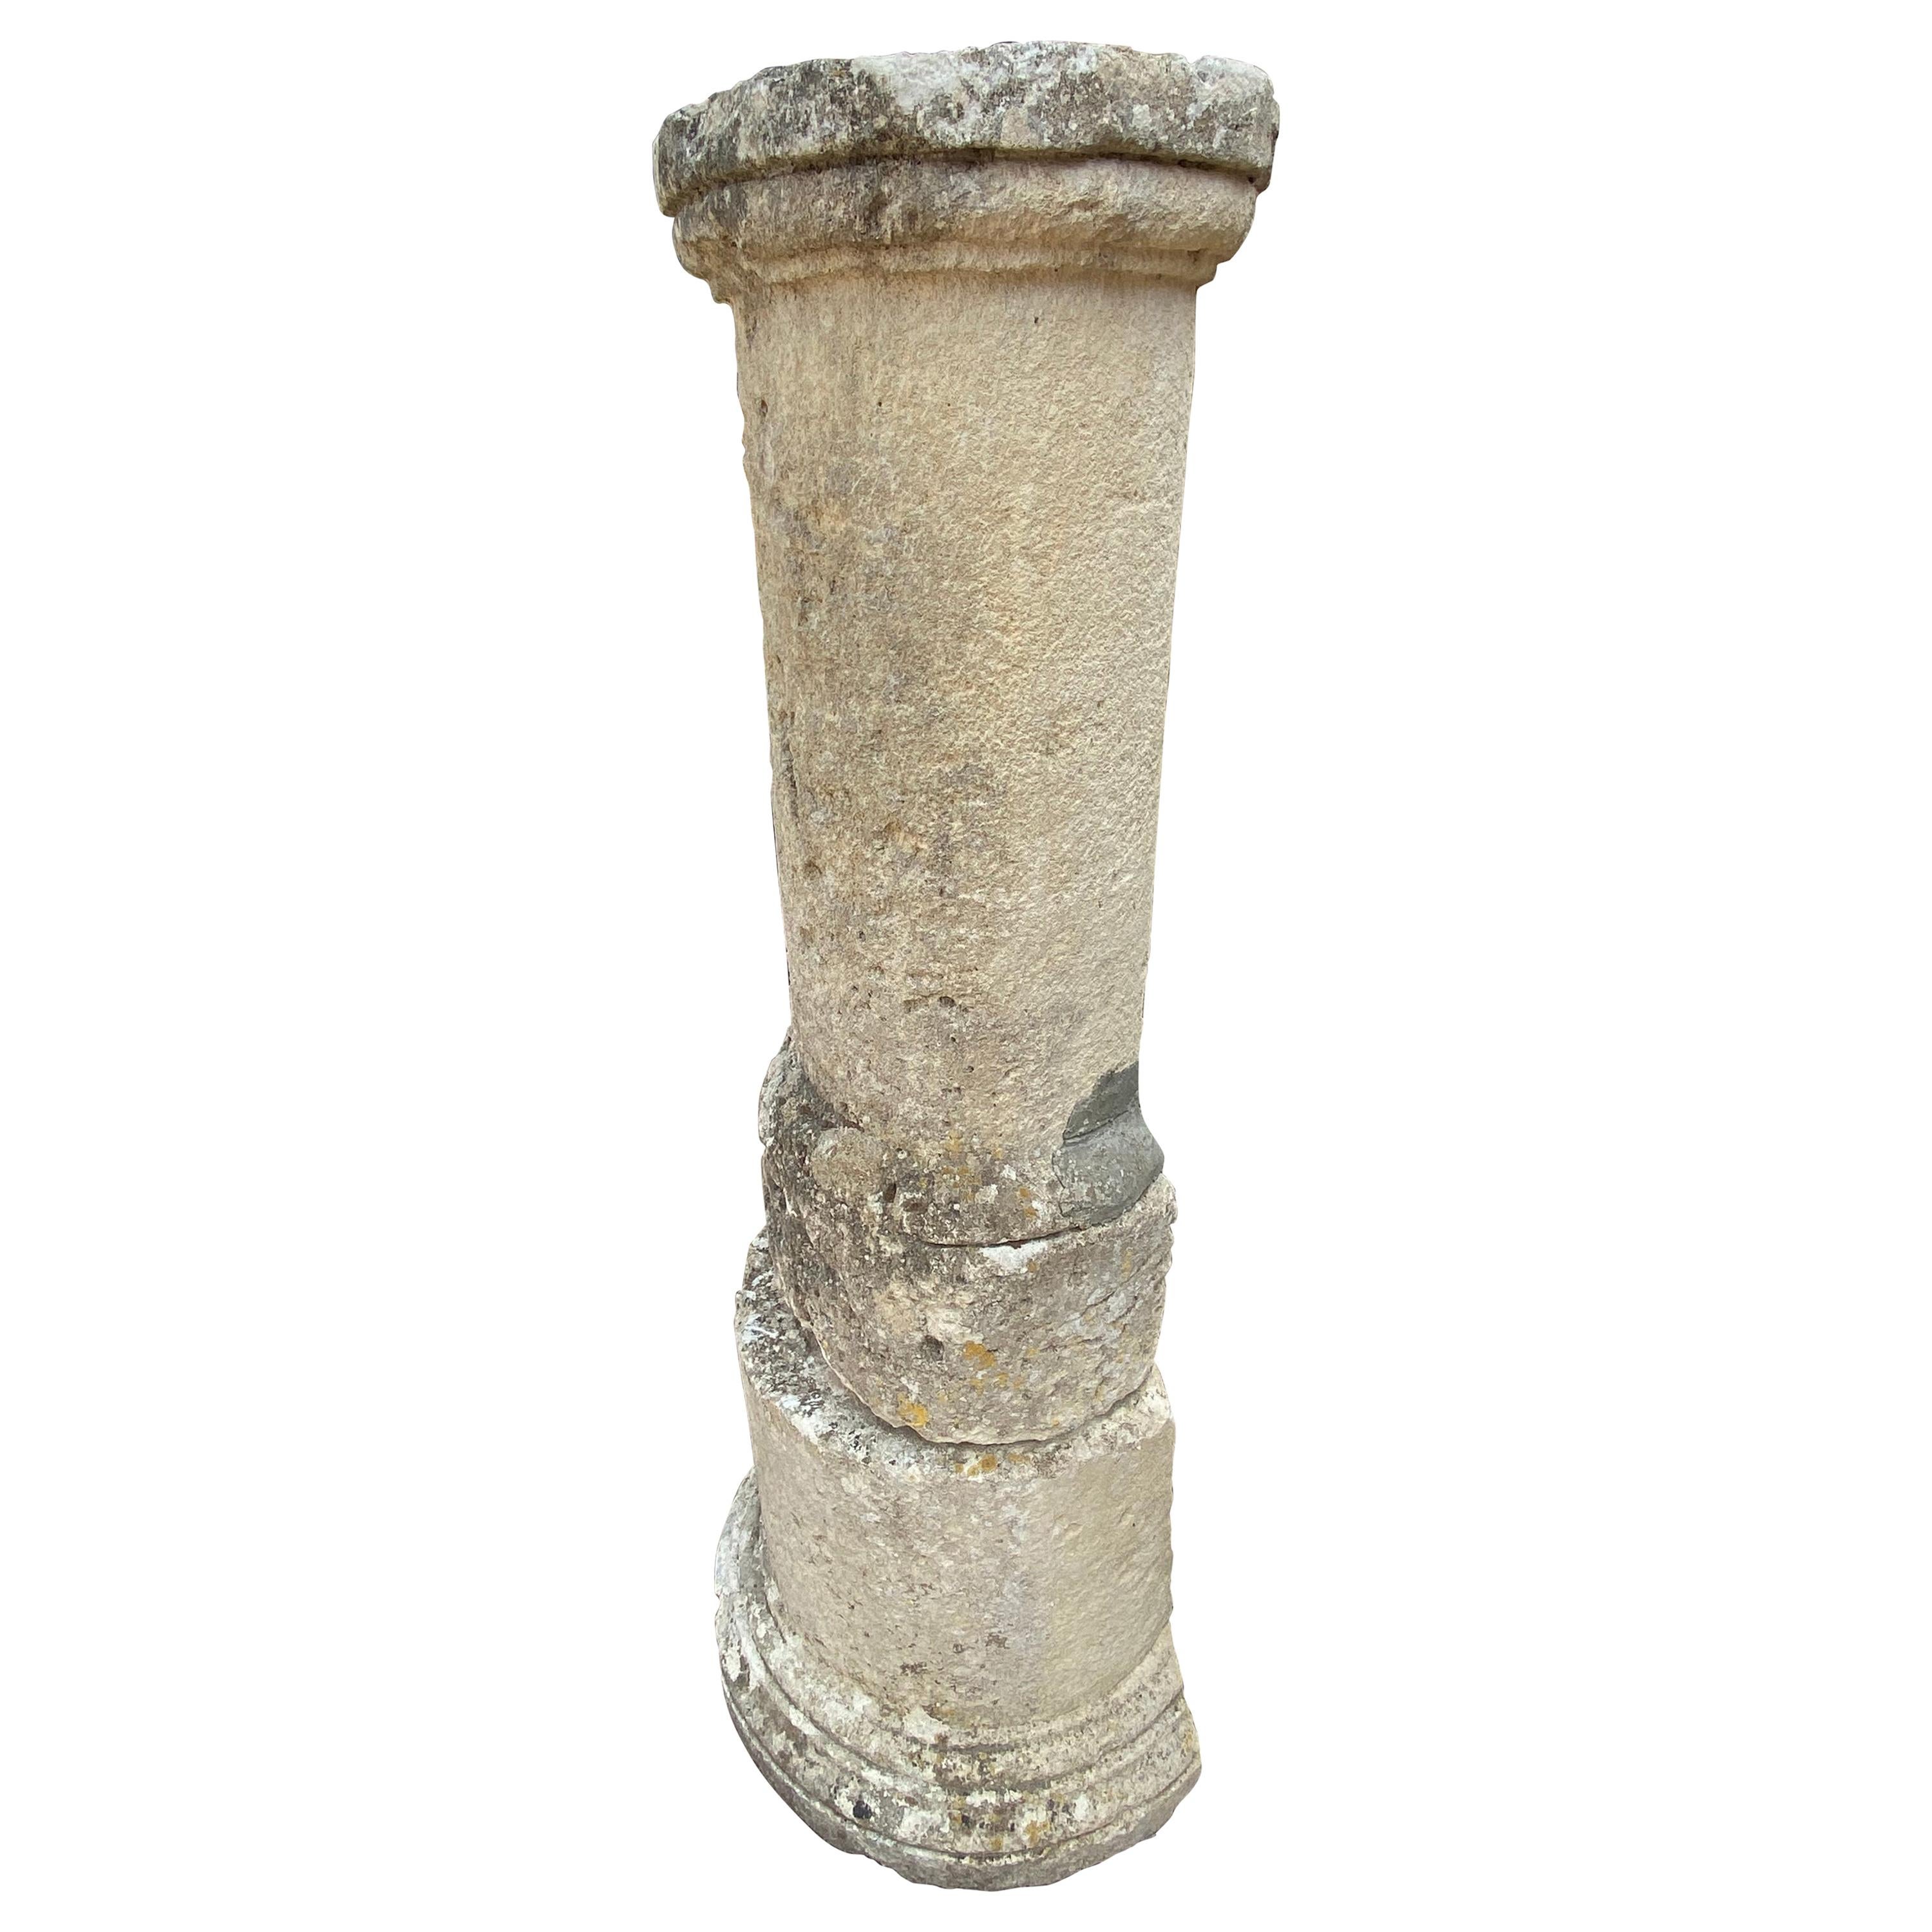 Antique Limestone Columns For Sale